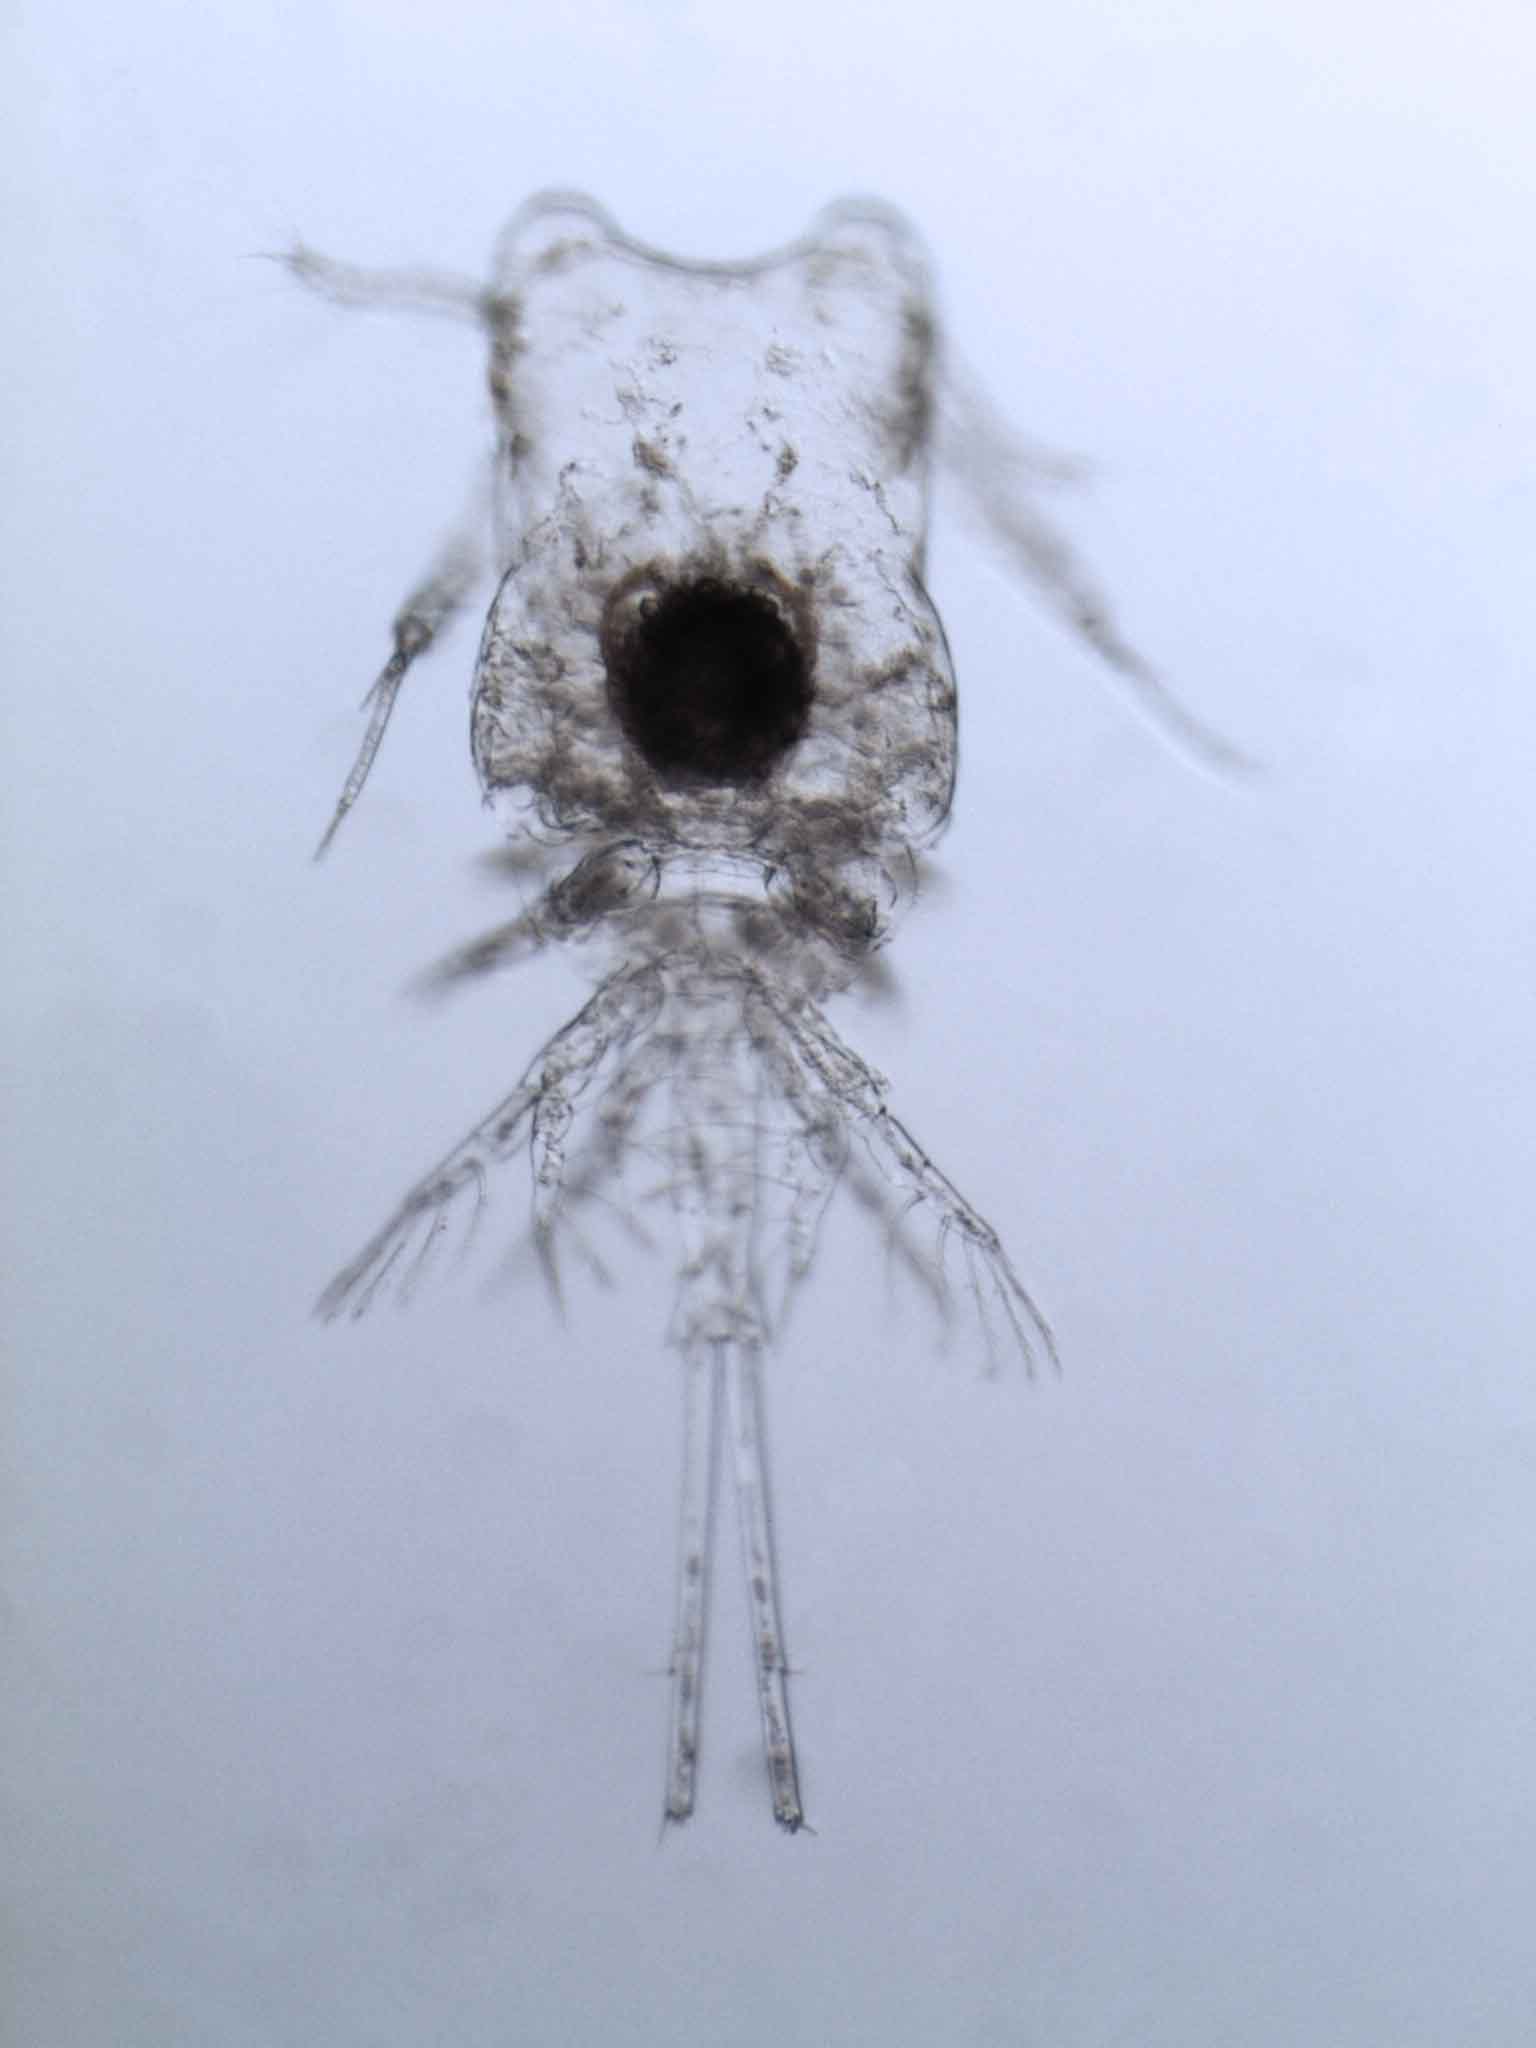 Plankton seen through a microscope